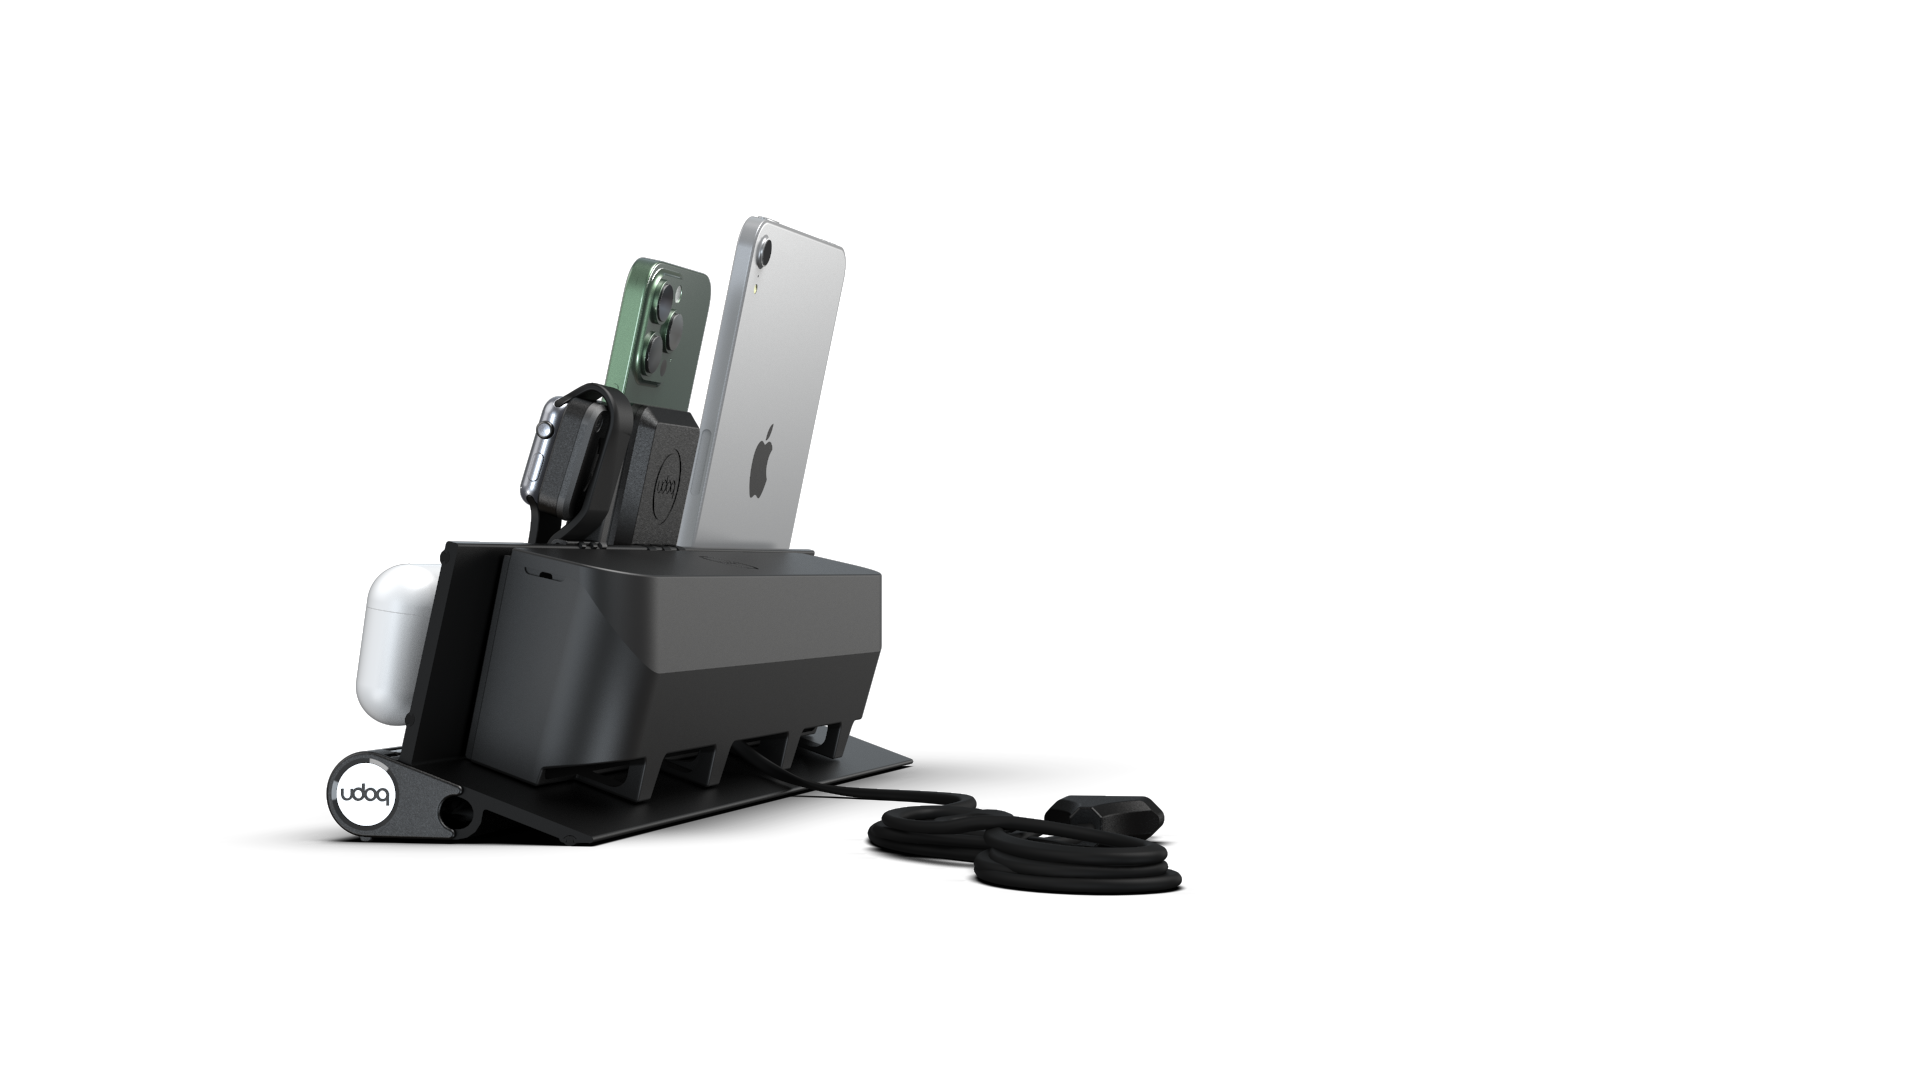 udoq Estación de carga múltiple 400 en negro con cargador MagSafe y Power Delivery, adaptador para Apple Watch